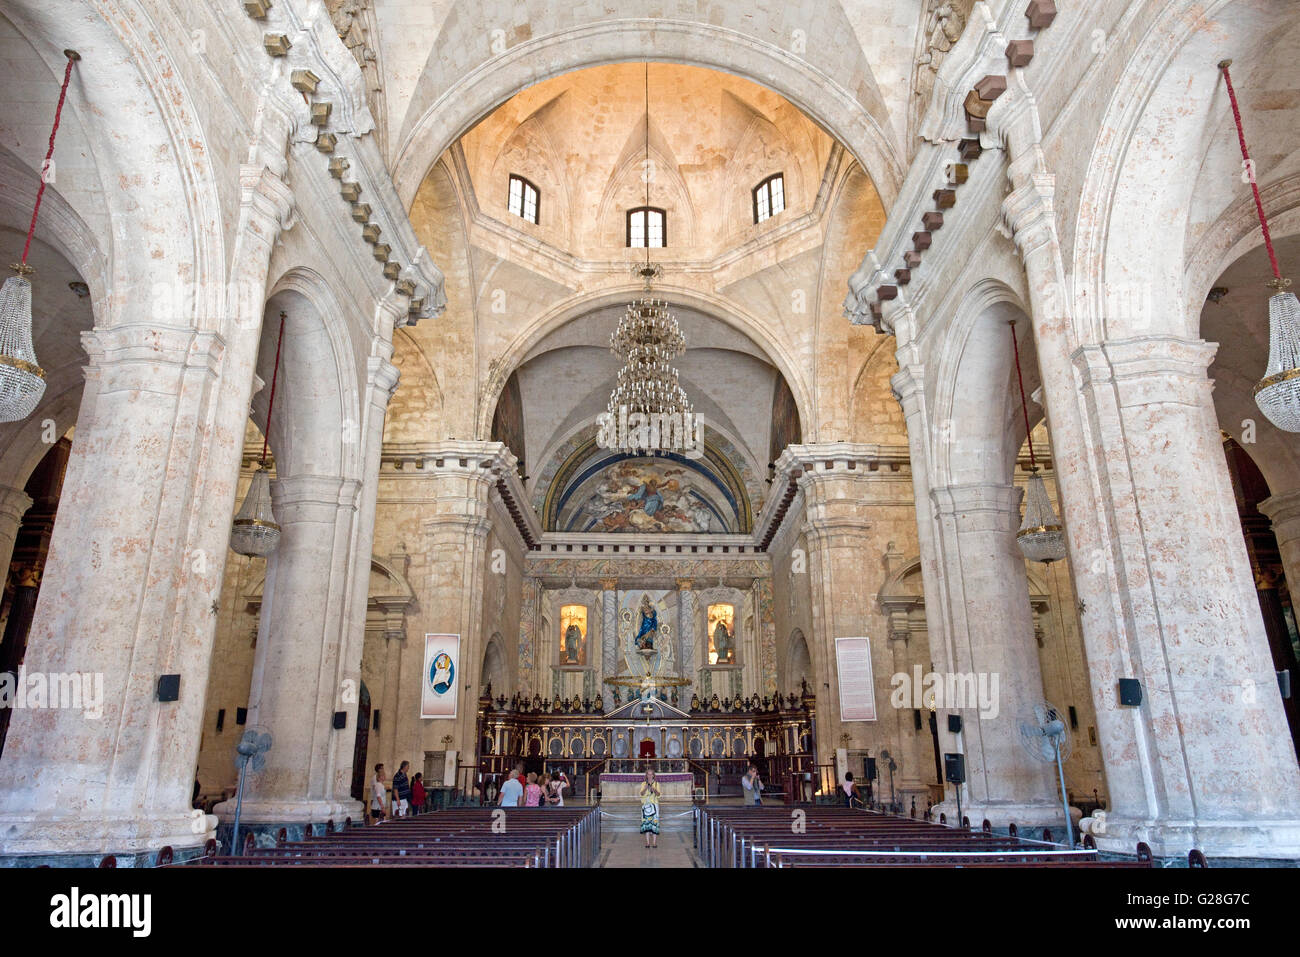 Innenansicht der Kathedrale von Havanna in der Plaza De La Catedral - befindet sich im Zentrum von Alt-Havanna. Stockfoto